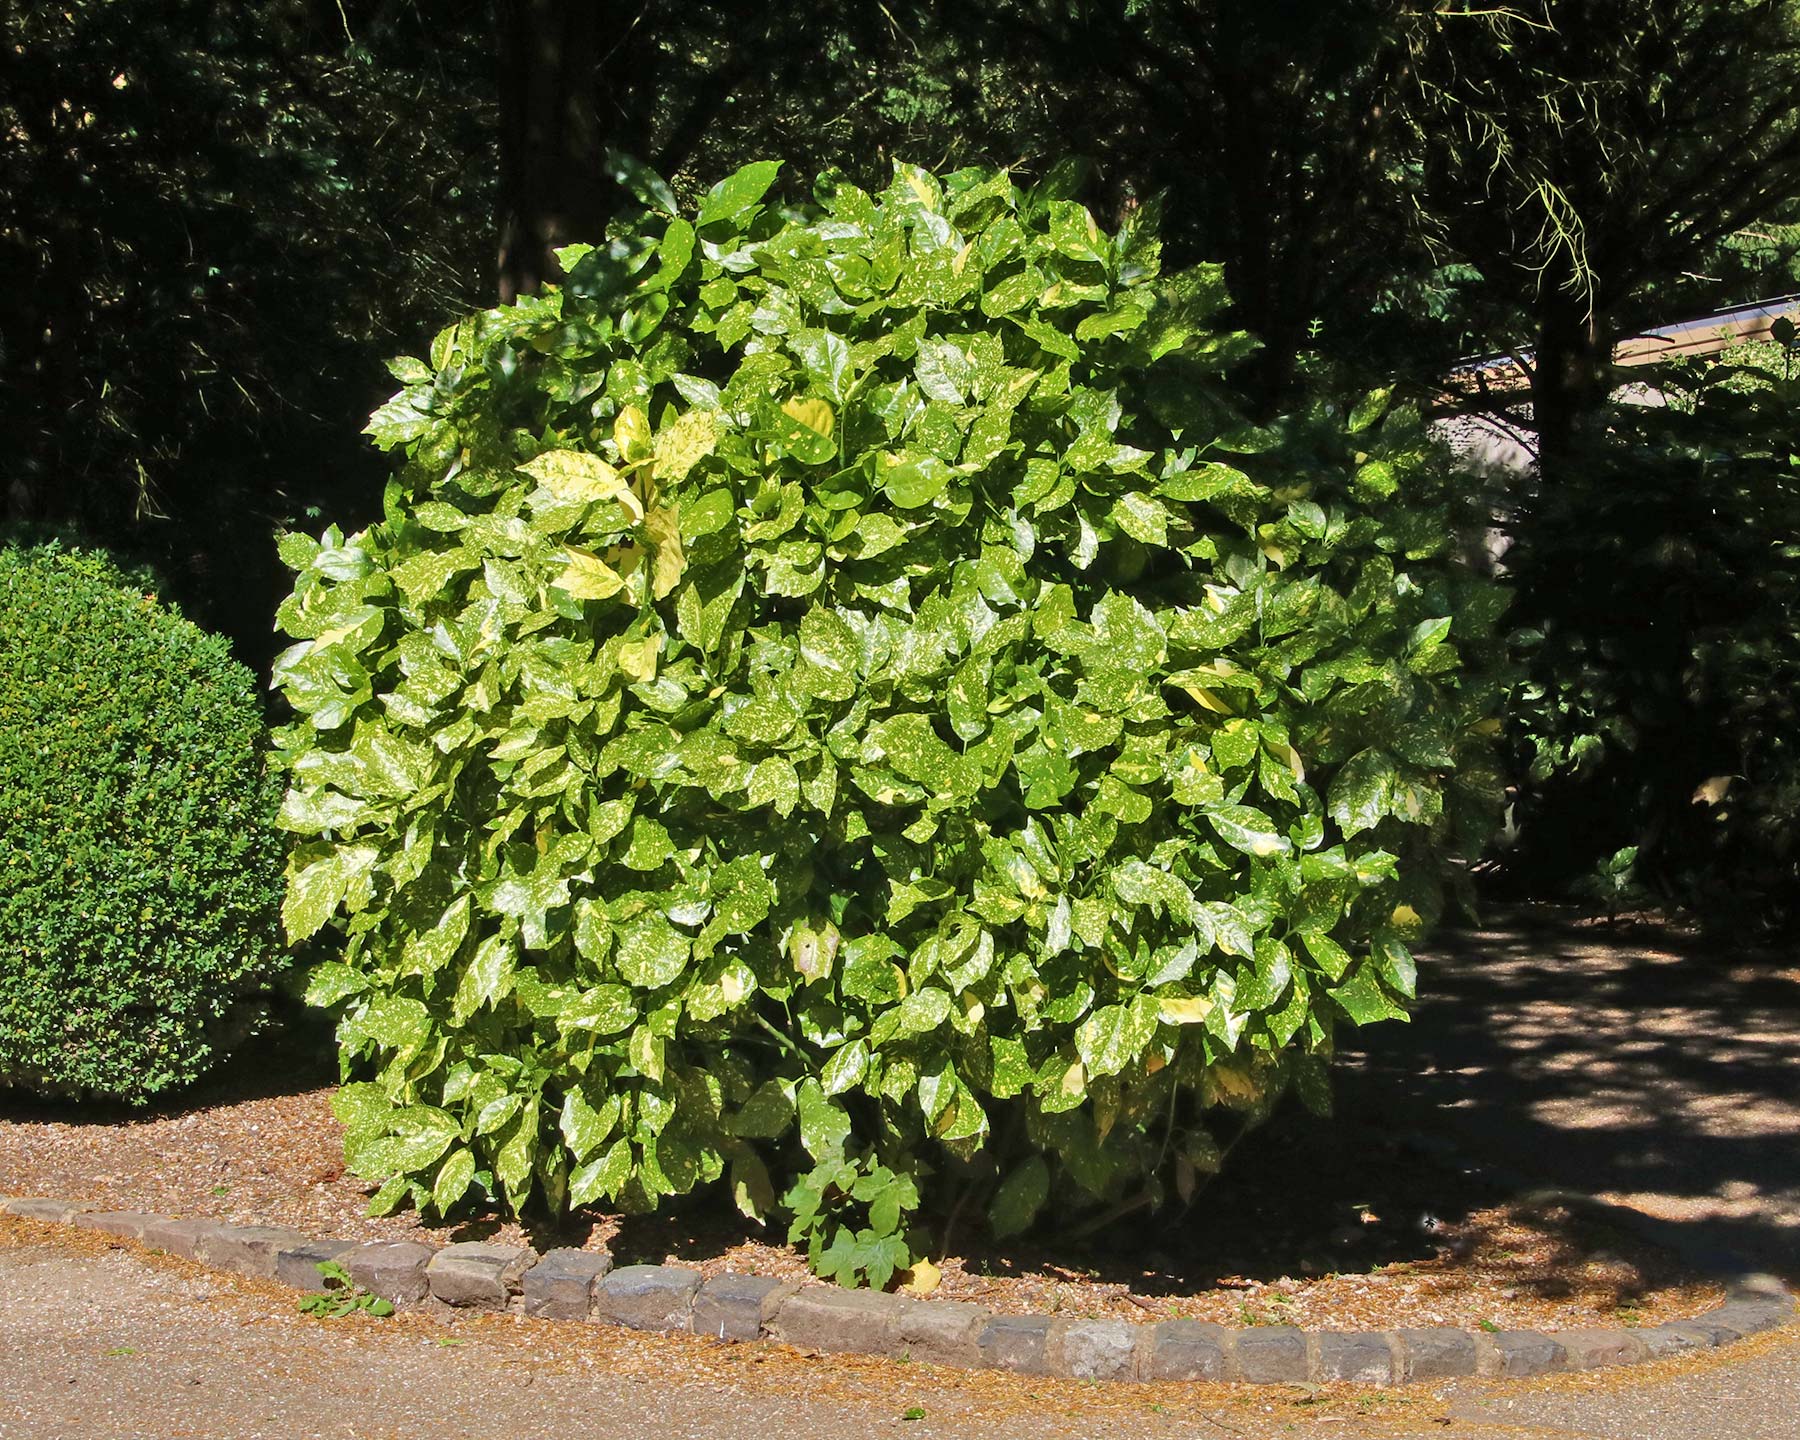 Aucuba japonica Variegata, as seen at Waddesdon Estate, UK